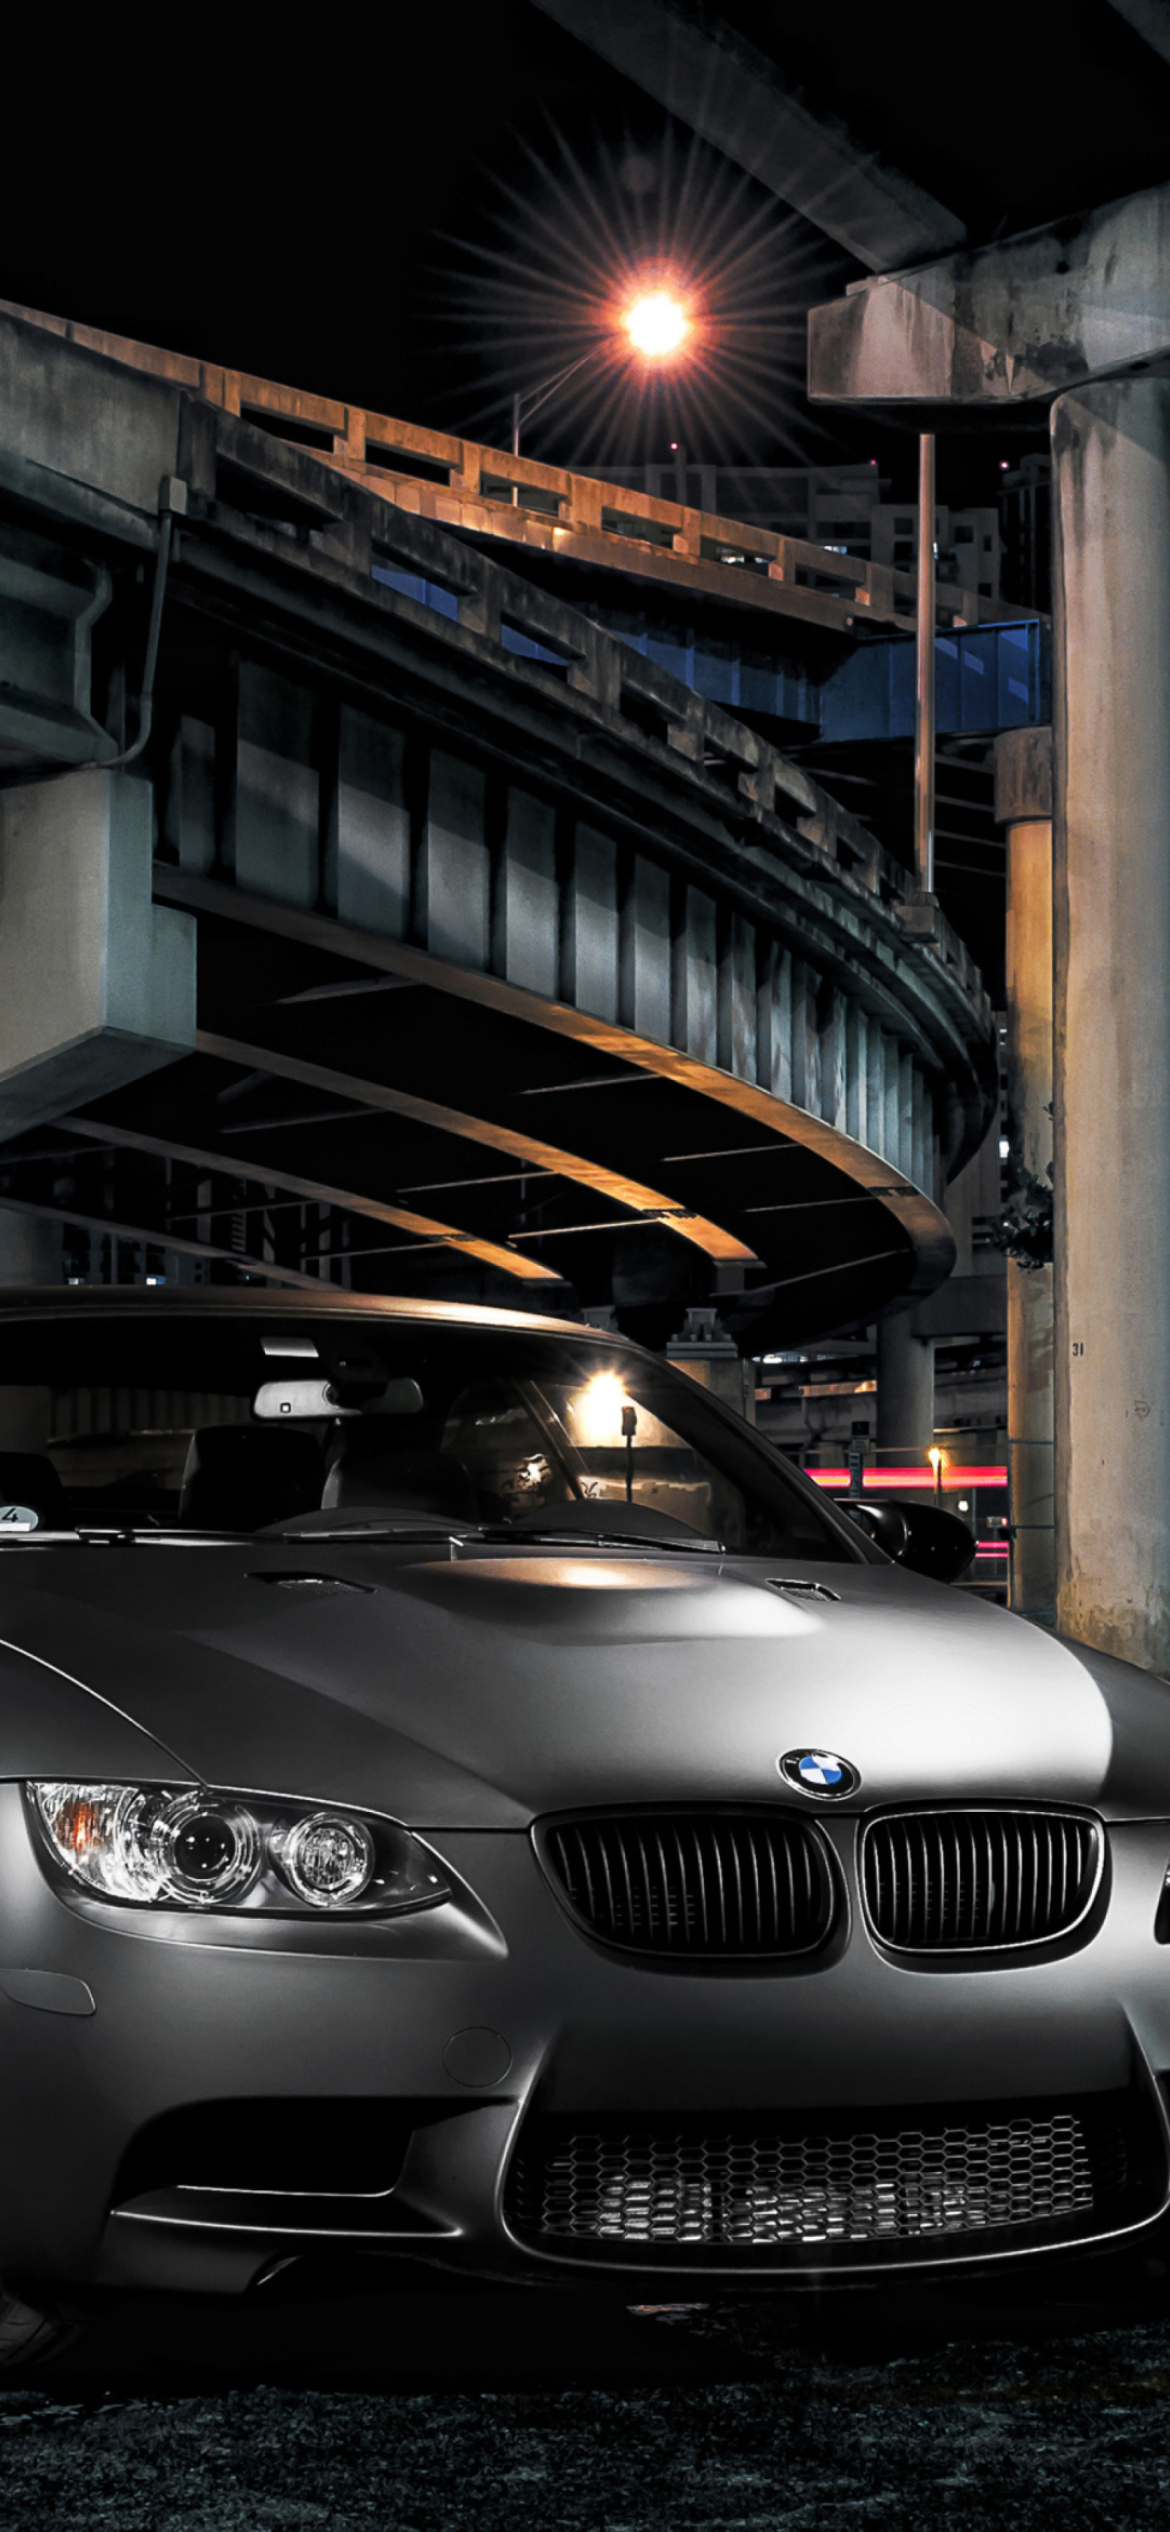 Das BMW Coupe Wallpaper 1170x2532